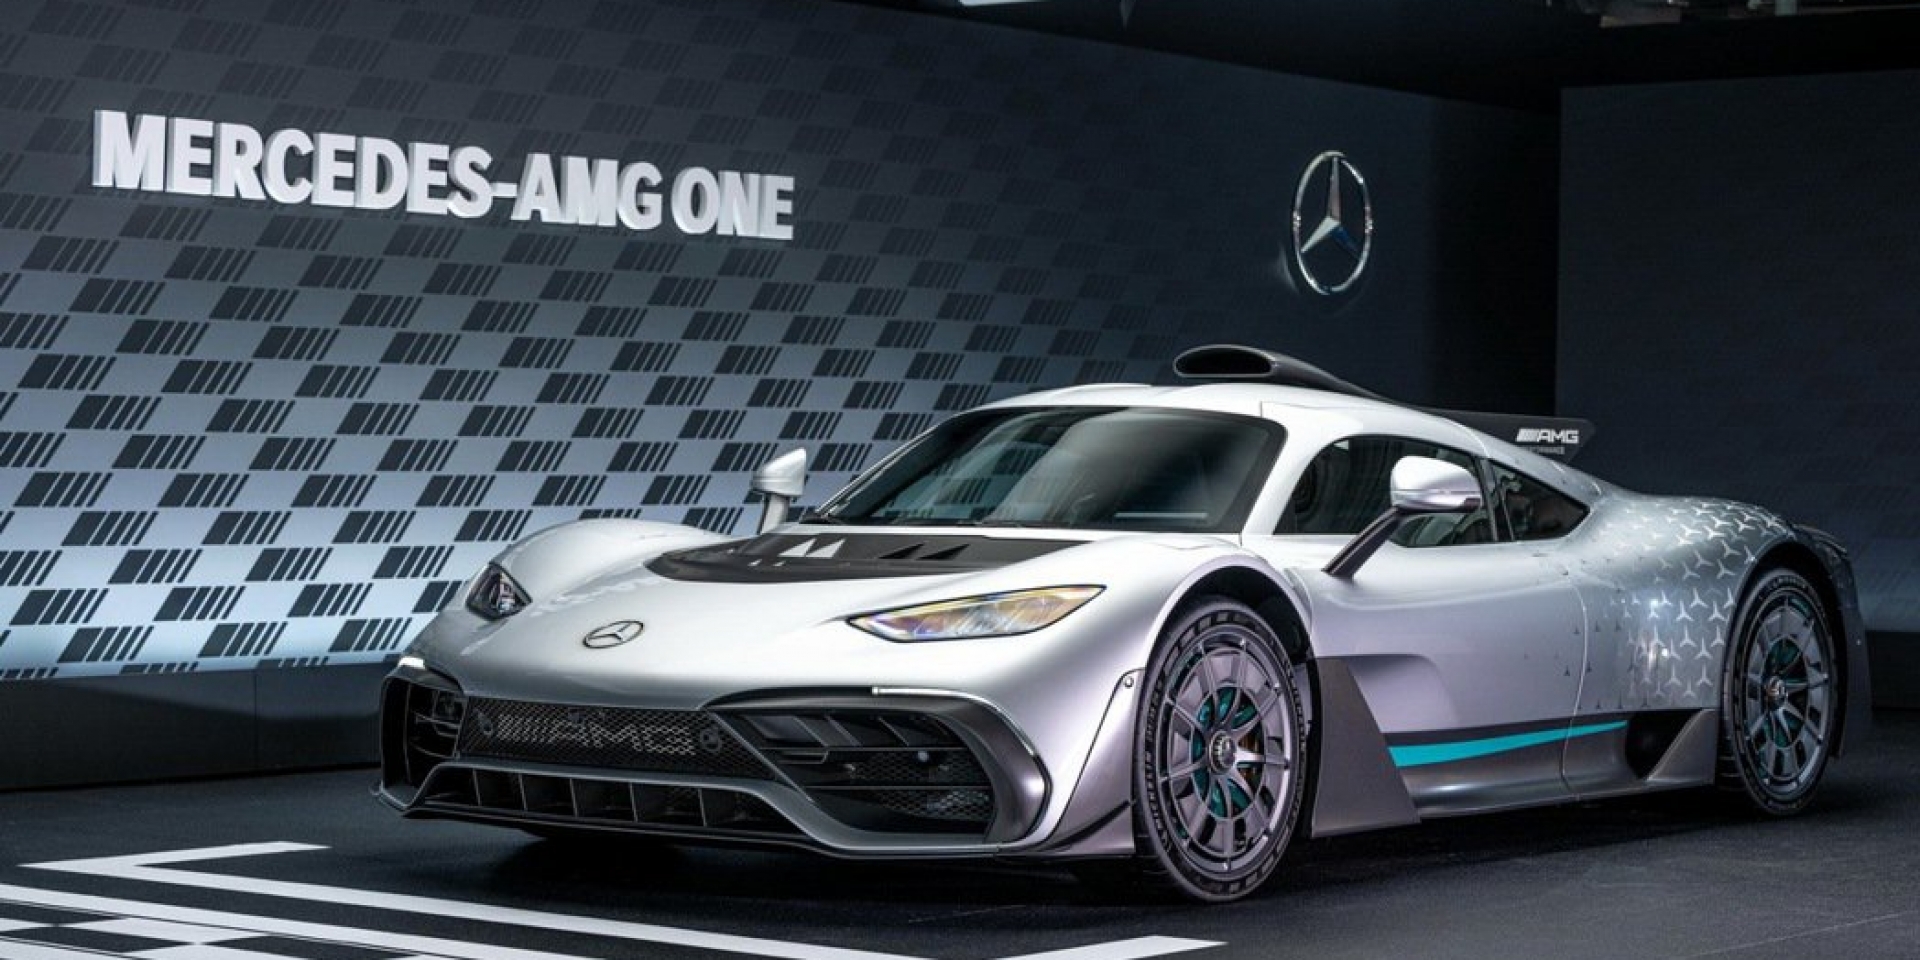 1063匹的終極神獸  道路版F1 Mercedes-AMG ONE正式亮相